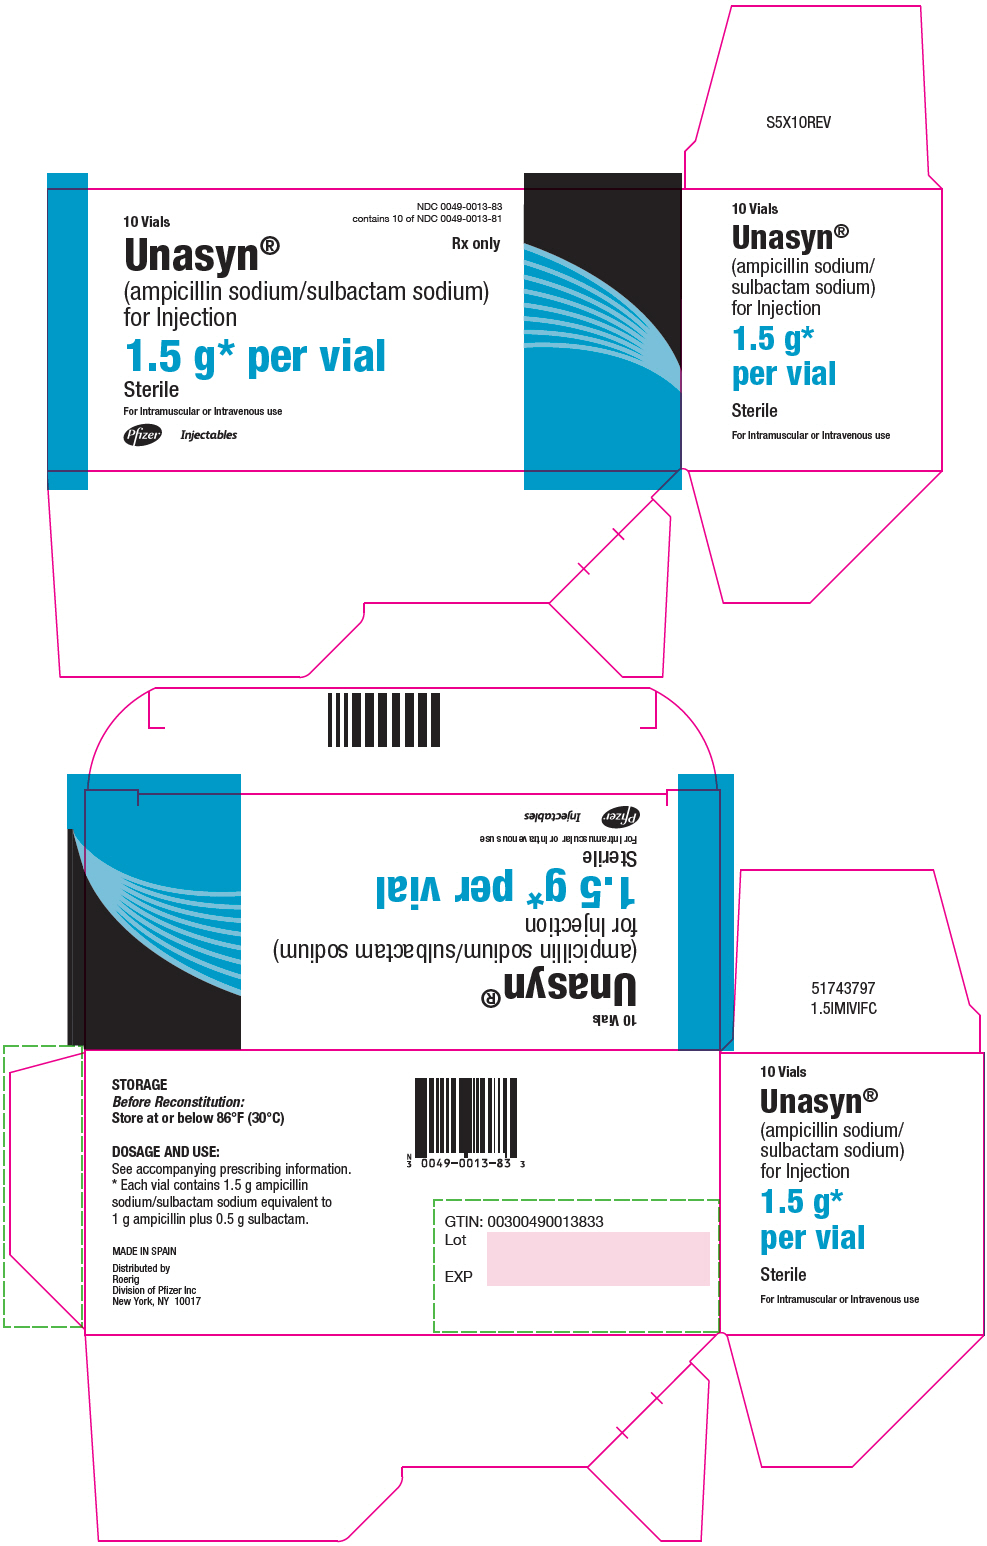 PRINCIPAL DISPLAY PANEL - 1.5 g Vial Carton